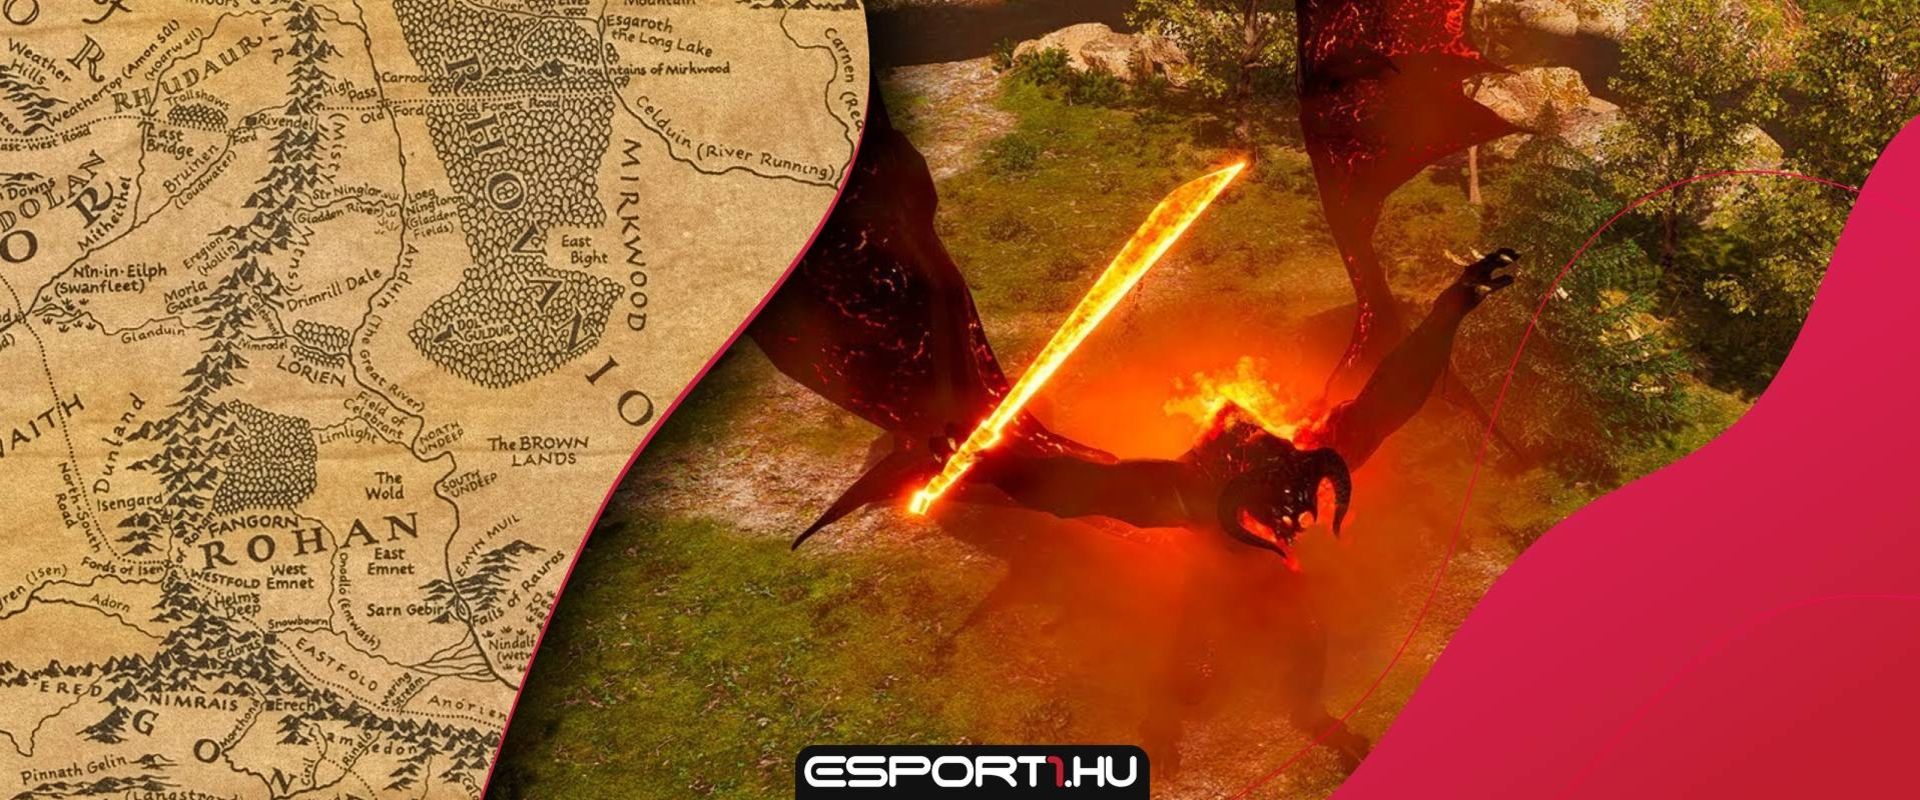 Így fest a The Lord of the Rings: Battle for Middle-Earth rajongói felújítása